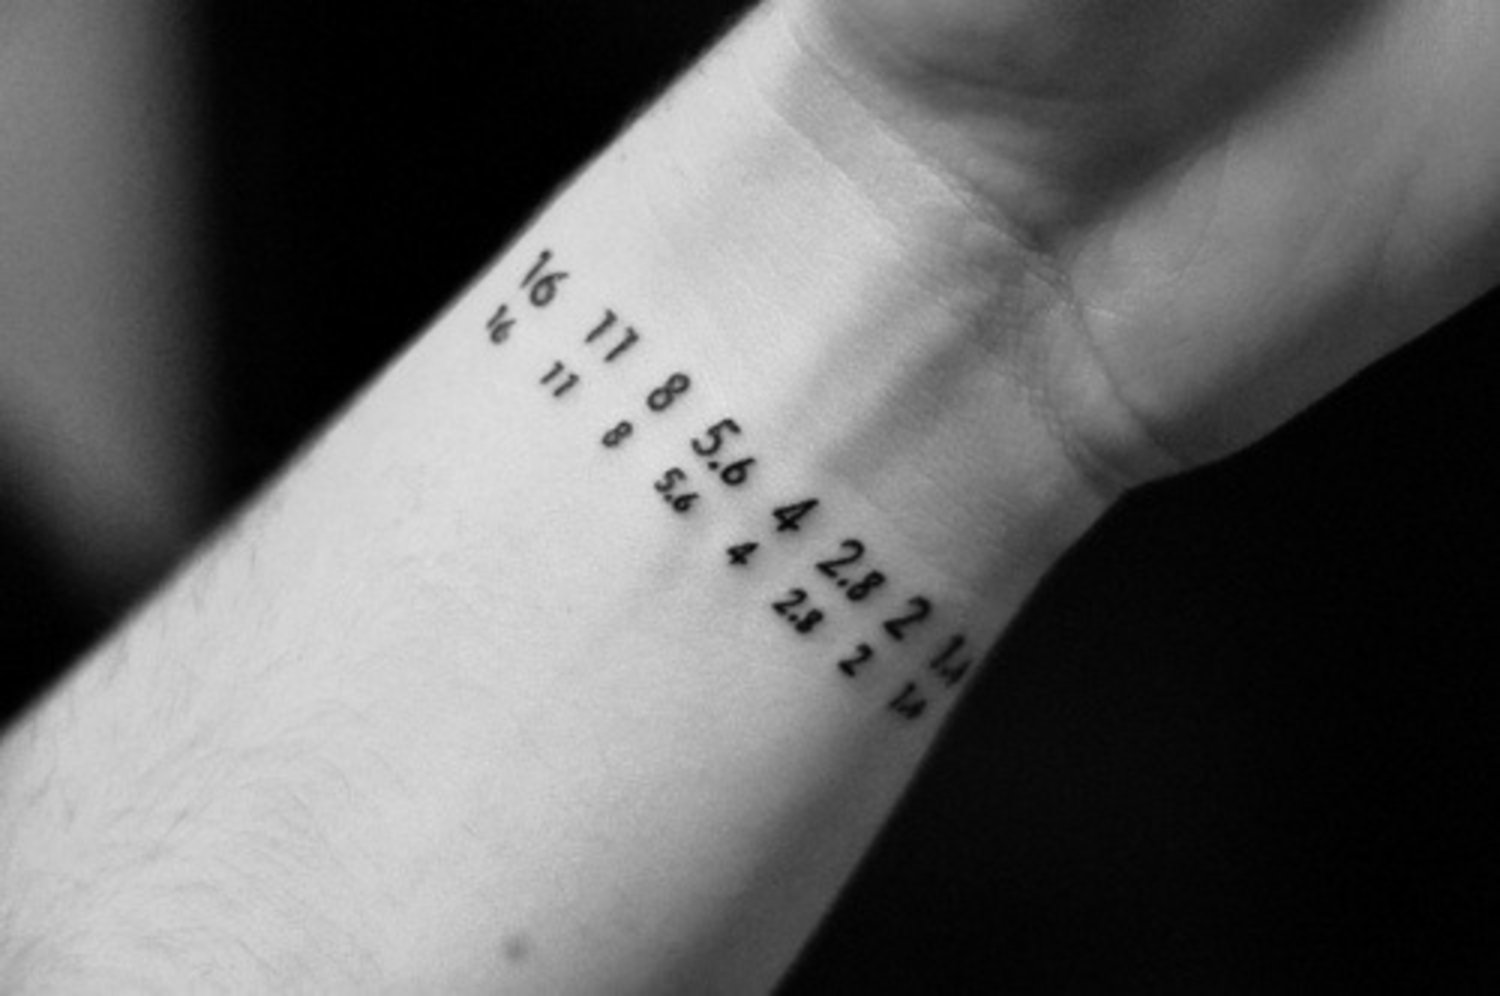 Татуировки на запястье с числами